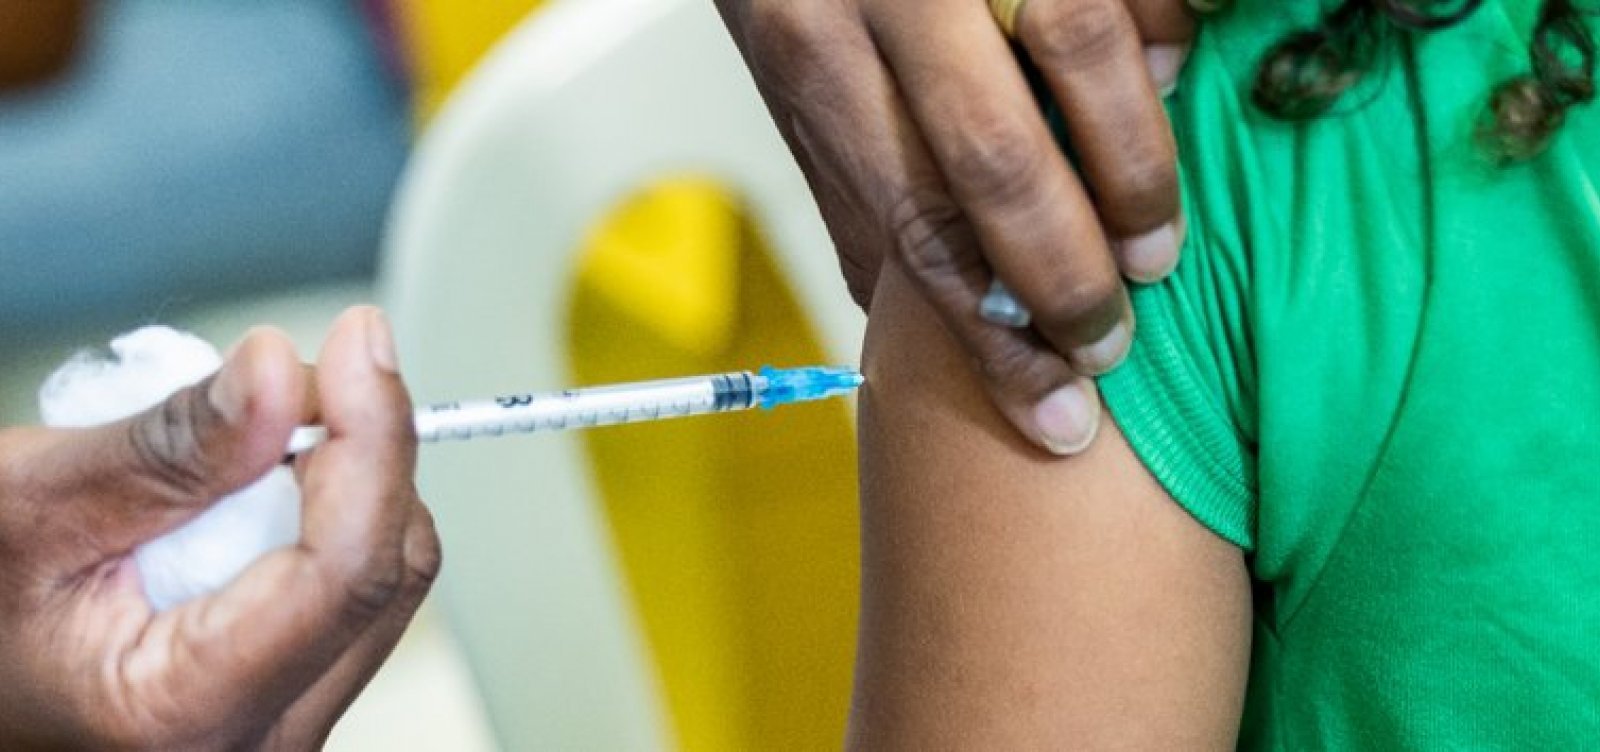 Moderna vence disputa para fornecer 12,5 milhões de doses de vacina contra a Covid ao Brasil